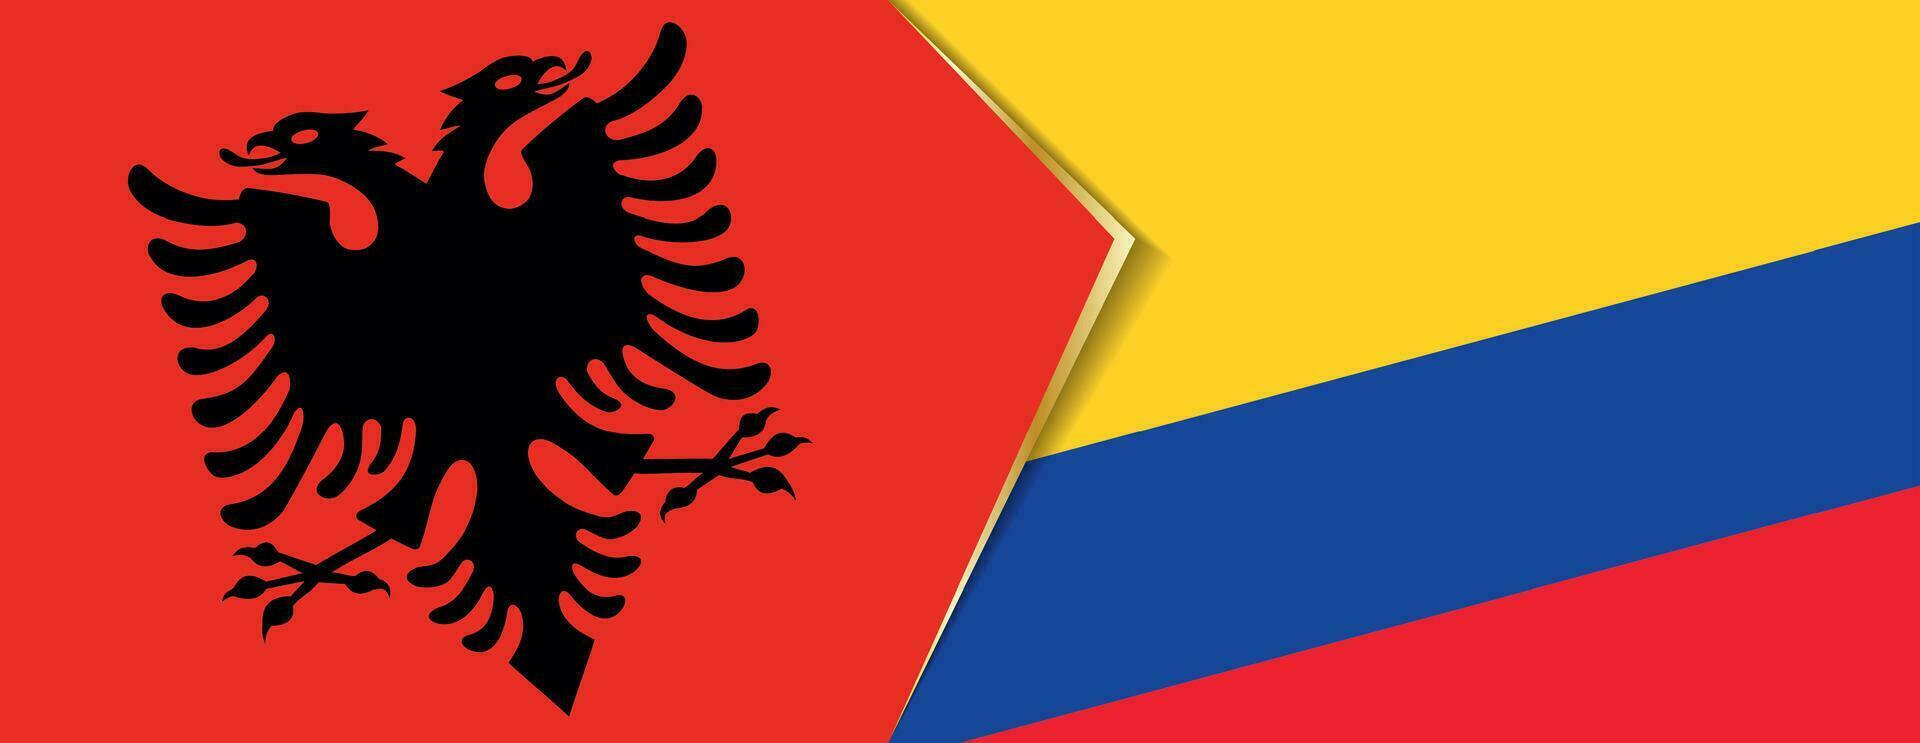 Albanië en Colombia vlaggen, twee vector vlaggen.